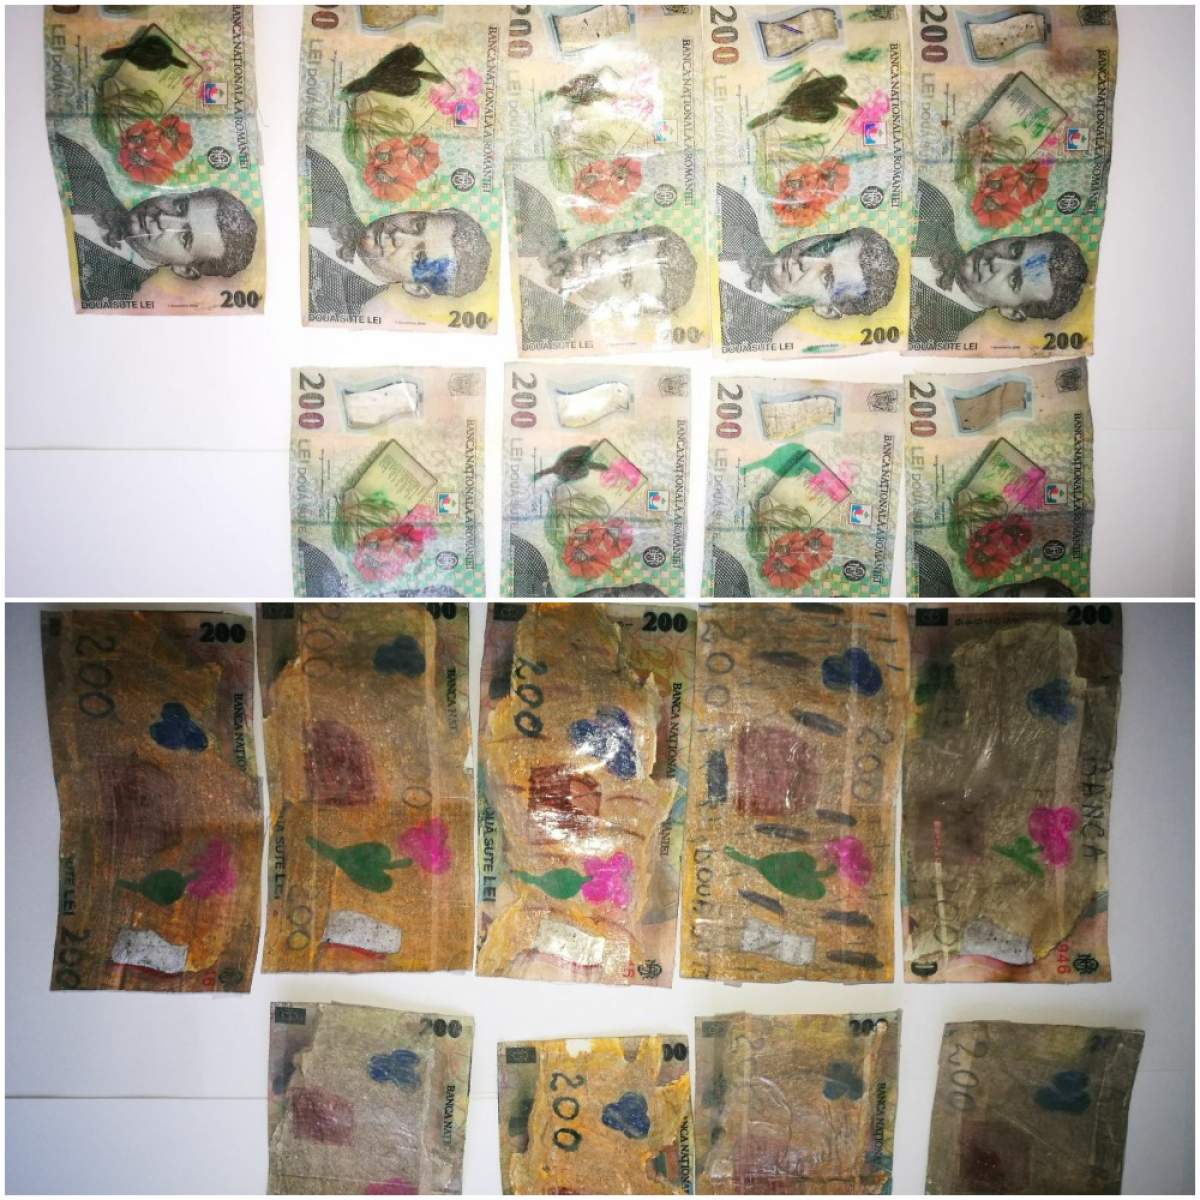 FOTO / Un bărbat din Vrancea a xeroxat bani și i-a colorat cu carioca. Ce voia să facă vrânceanul cu comicele bancnote